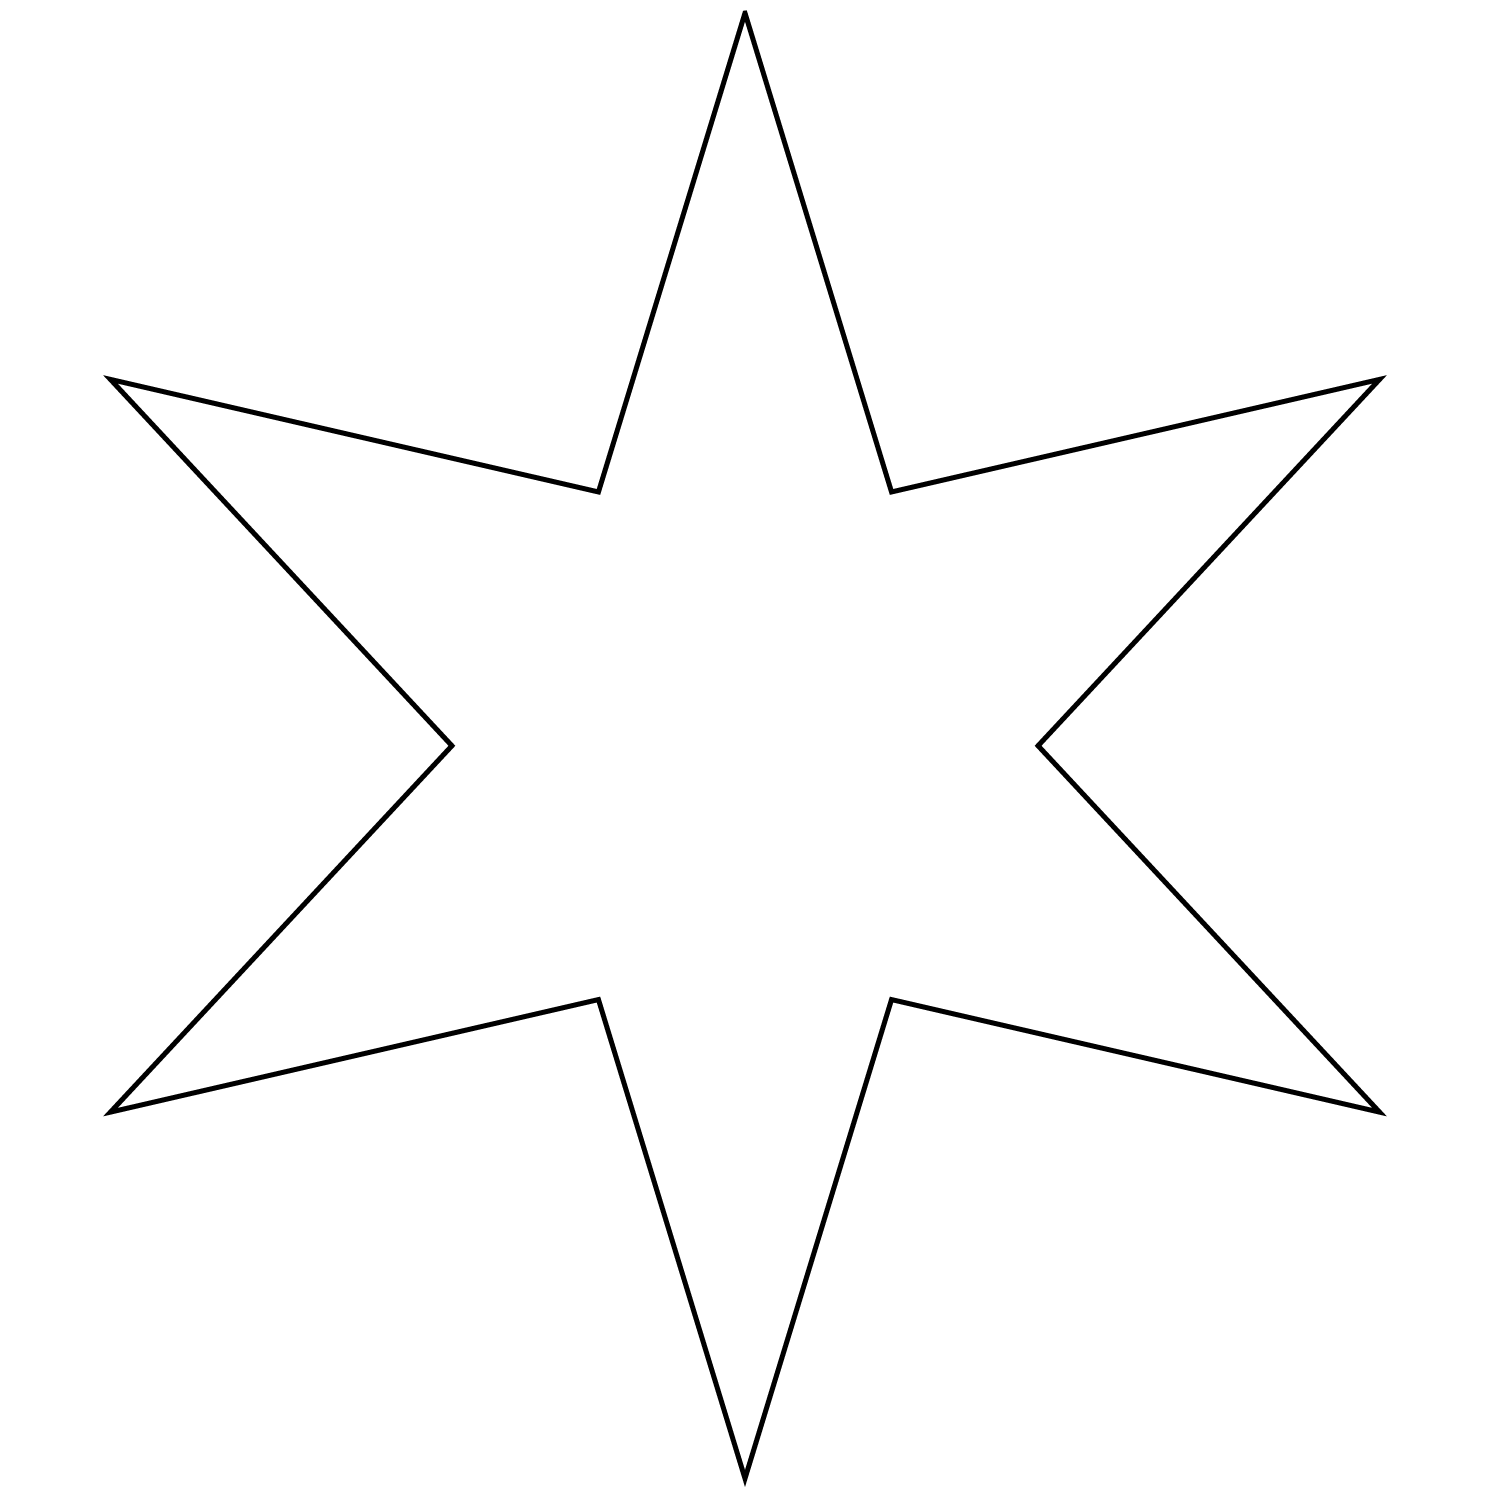 Звезда, трафарет для вырезания из бумаги: шаблонов бесплатно | Трафареты, Звезда, Звезда шаблон